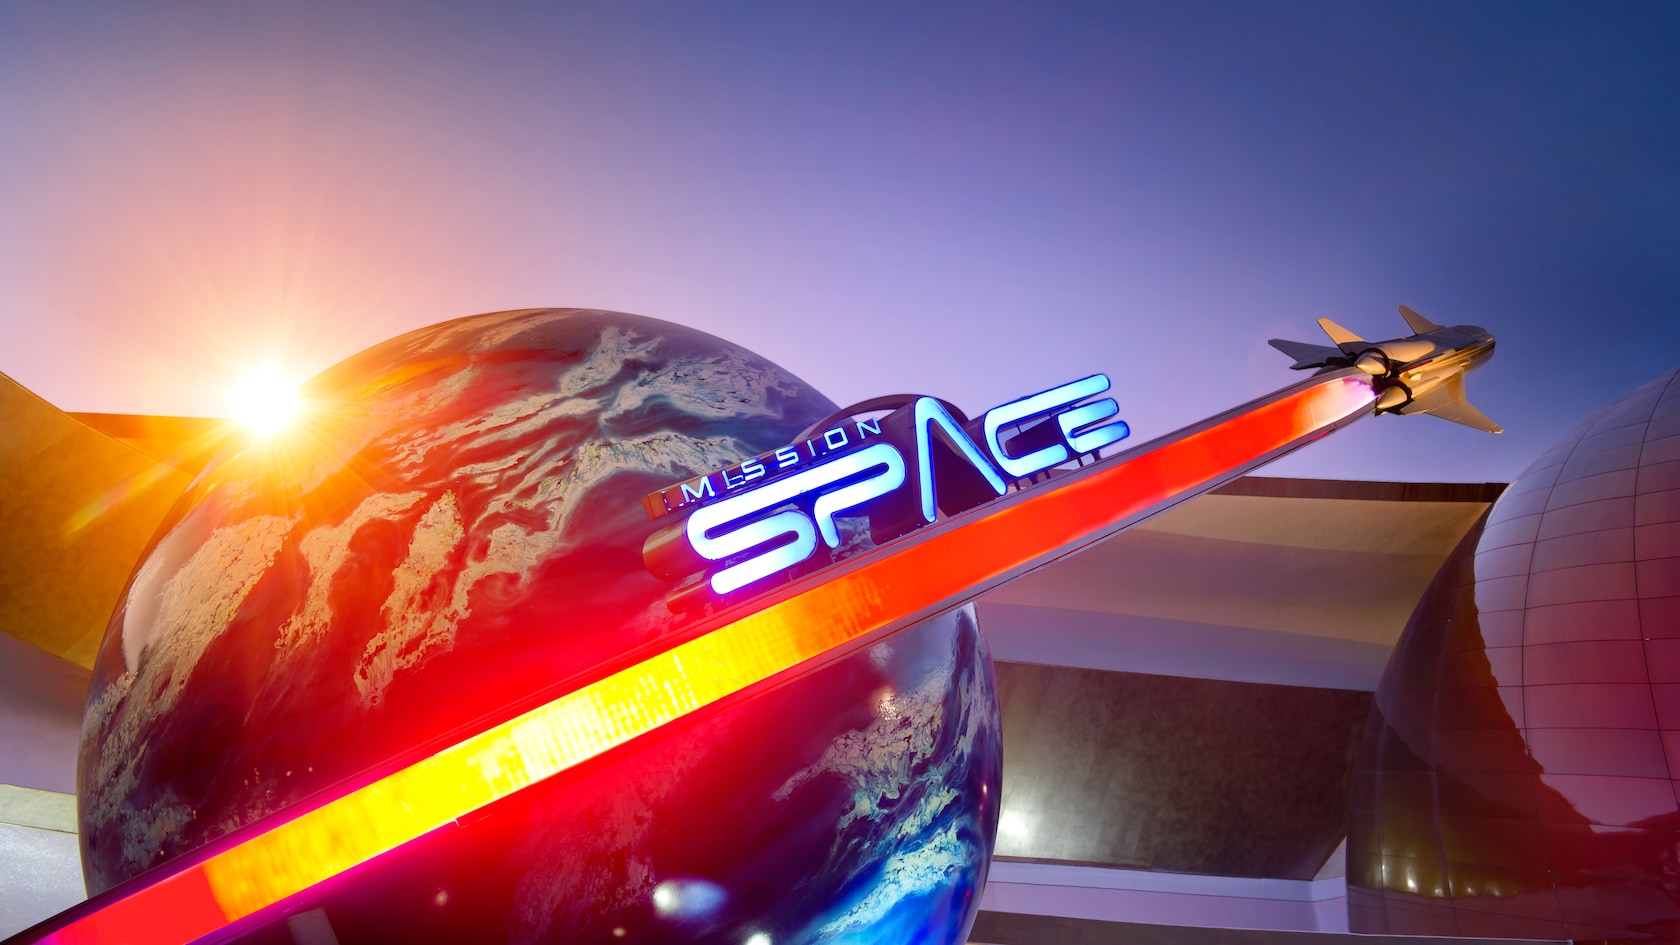 Mission: SPACE | Atrações do Epcot | Walt Disney World Resort